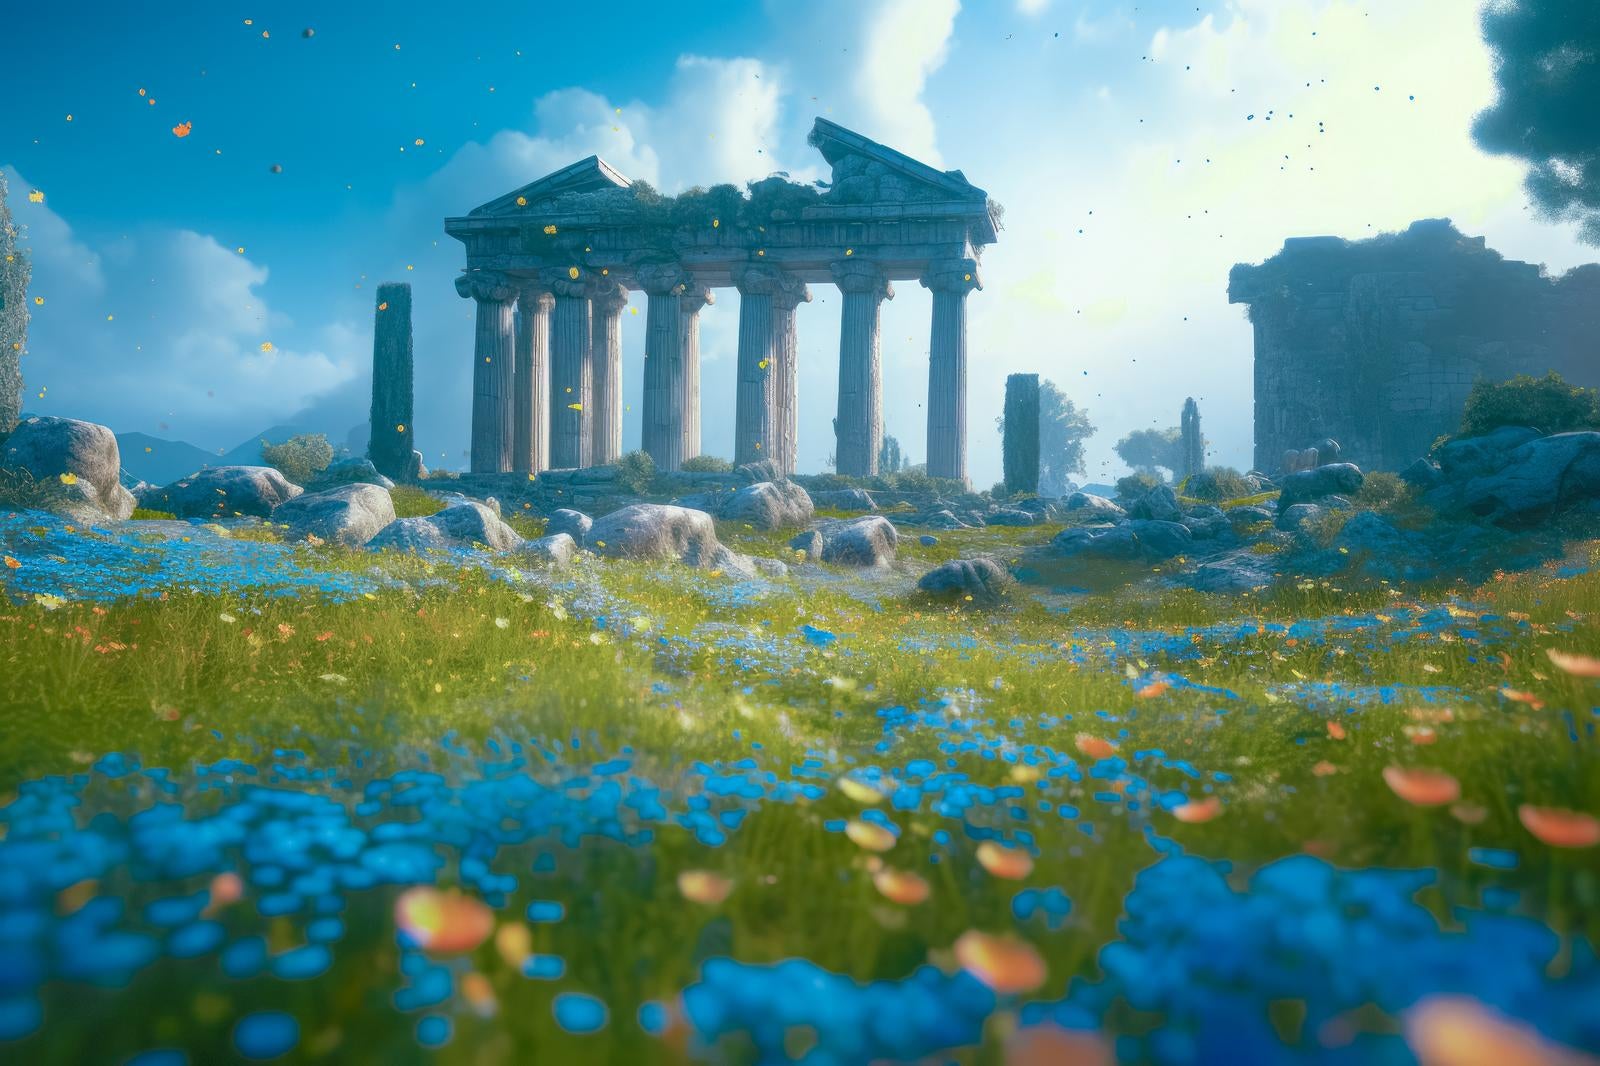 「神殿と遺跡 舞う葉と青い草花の美しい風景」の写真